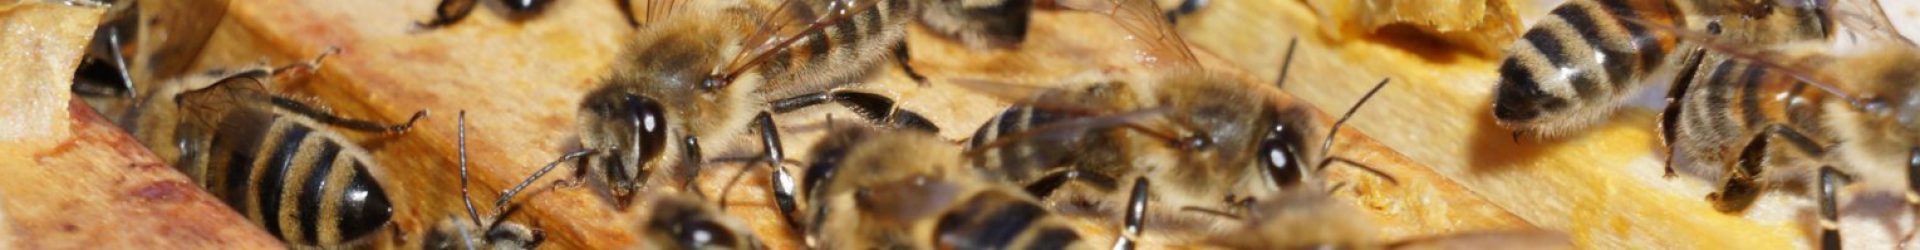 BMEL – Veranstaltungen und Messen – Bienen-Konferenz am 27.10.2016